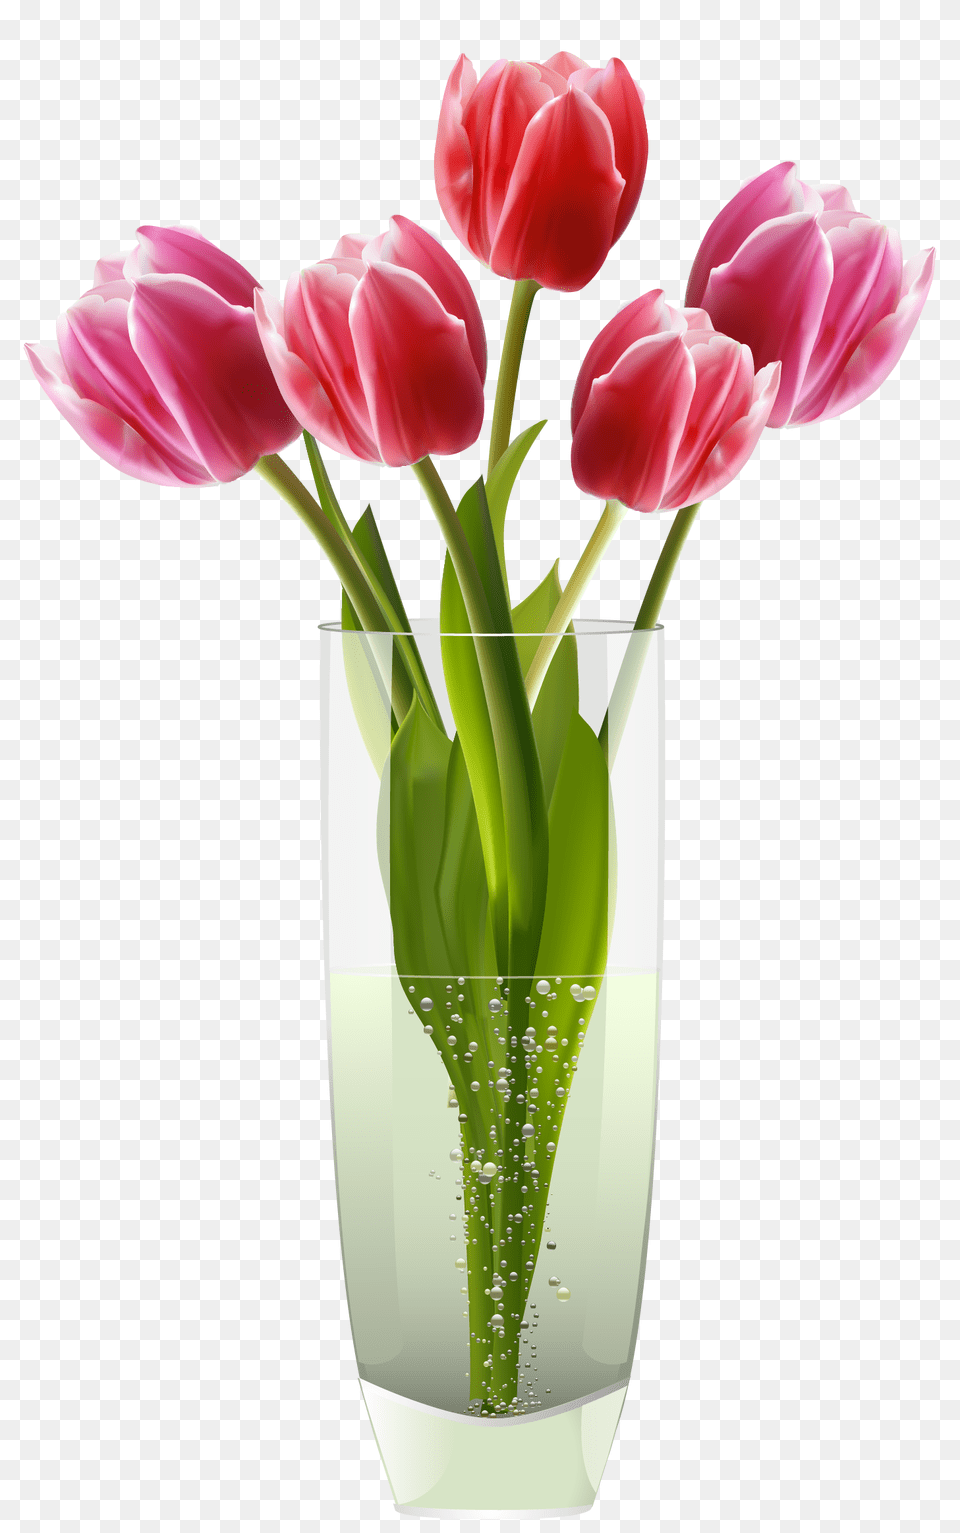 Pink Red Tulips Vase, Flower, Flower Arrangement, Jar, Plant Png Image